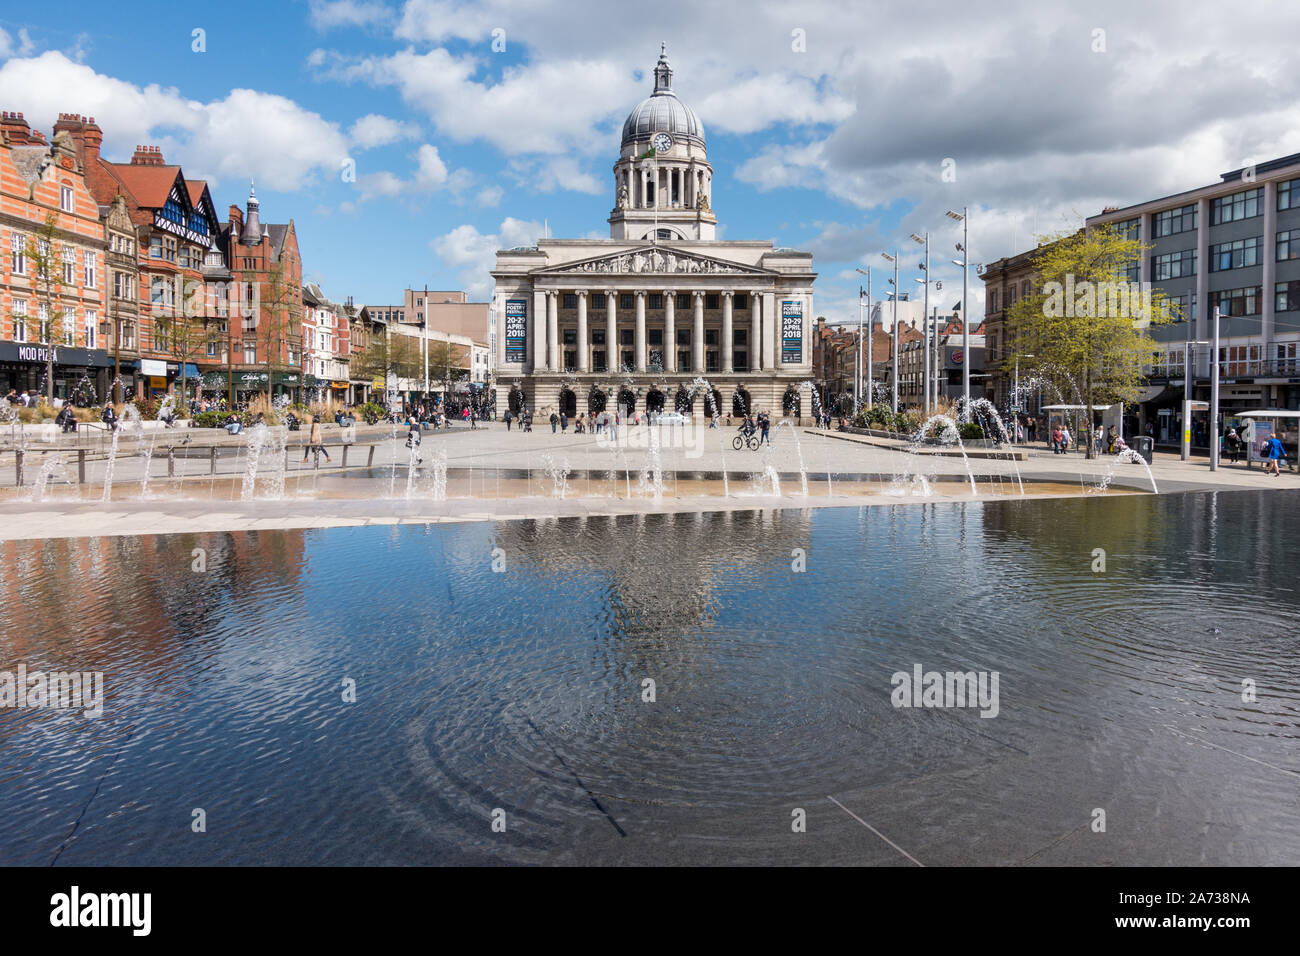 Wasserspiel in Alten Marktplatz mit Nottingham Rat Haus Gebäude im Hintergrund, Nottingham, England, UK. Stockfoto